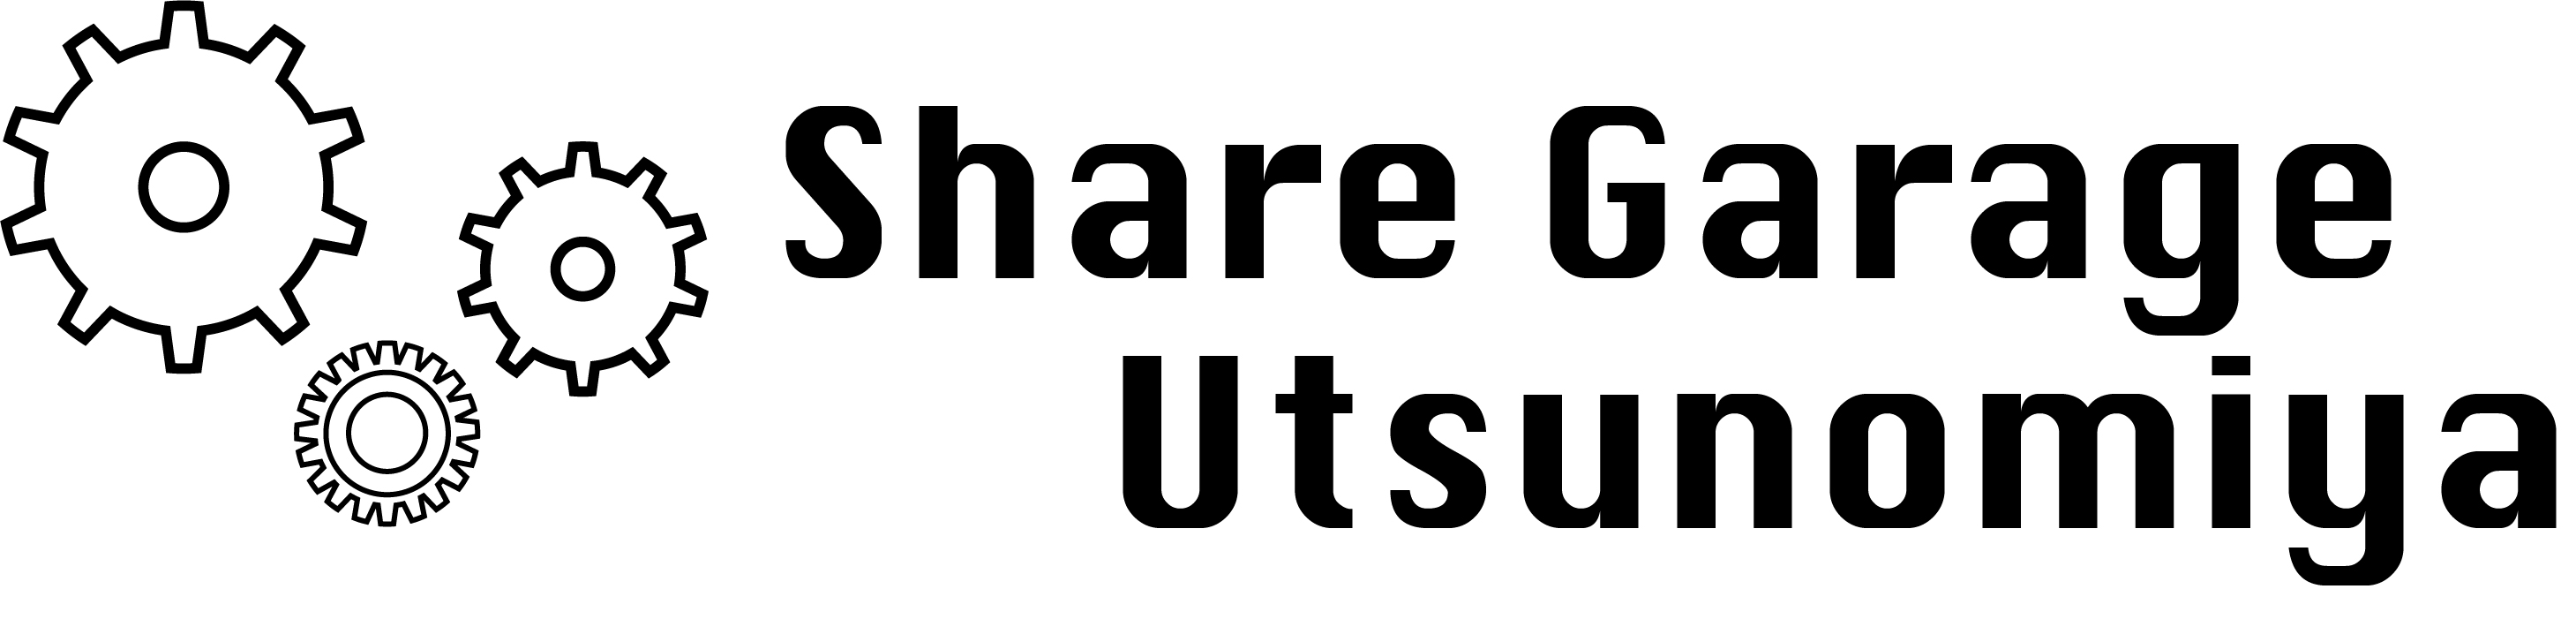 Share Garage Utsunomiya